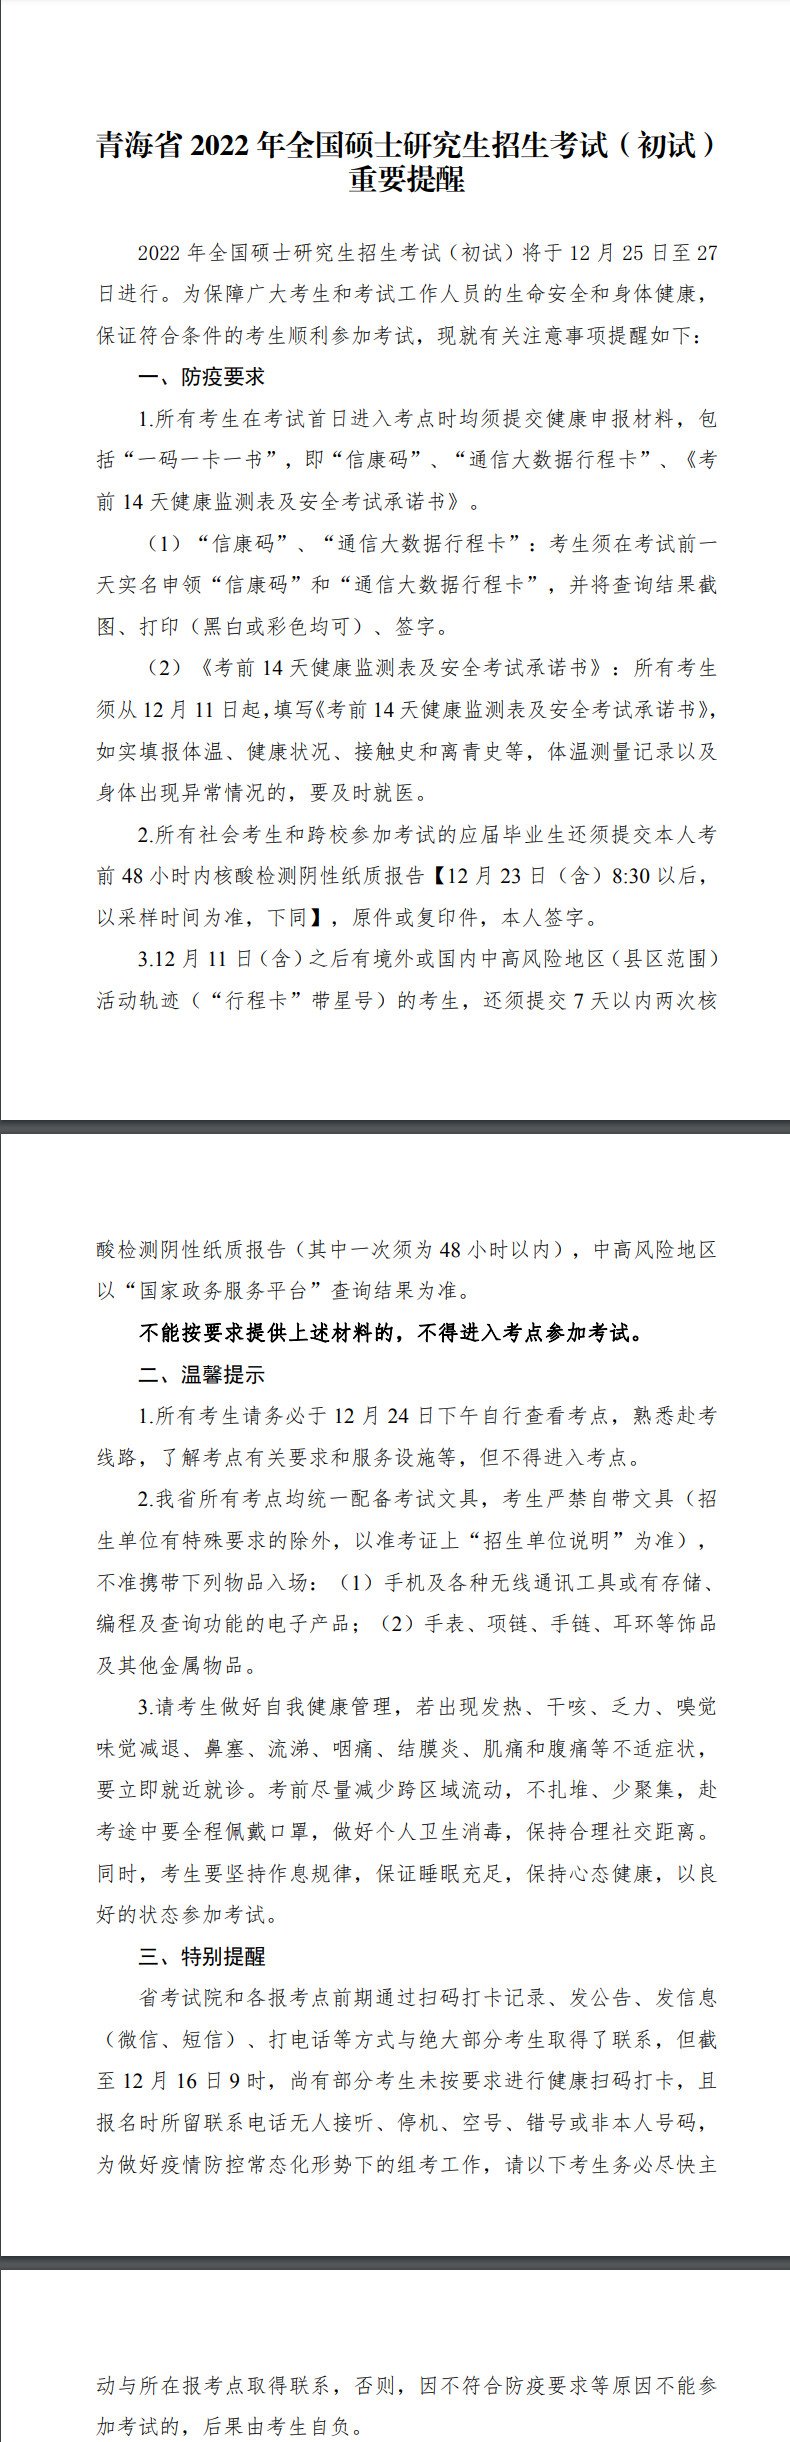 青海省 2022 年全国硕士研究生招生考试（初试） 重要提醒